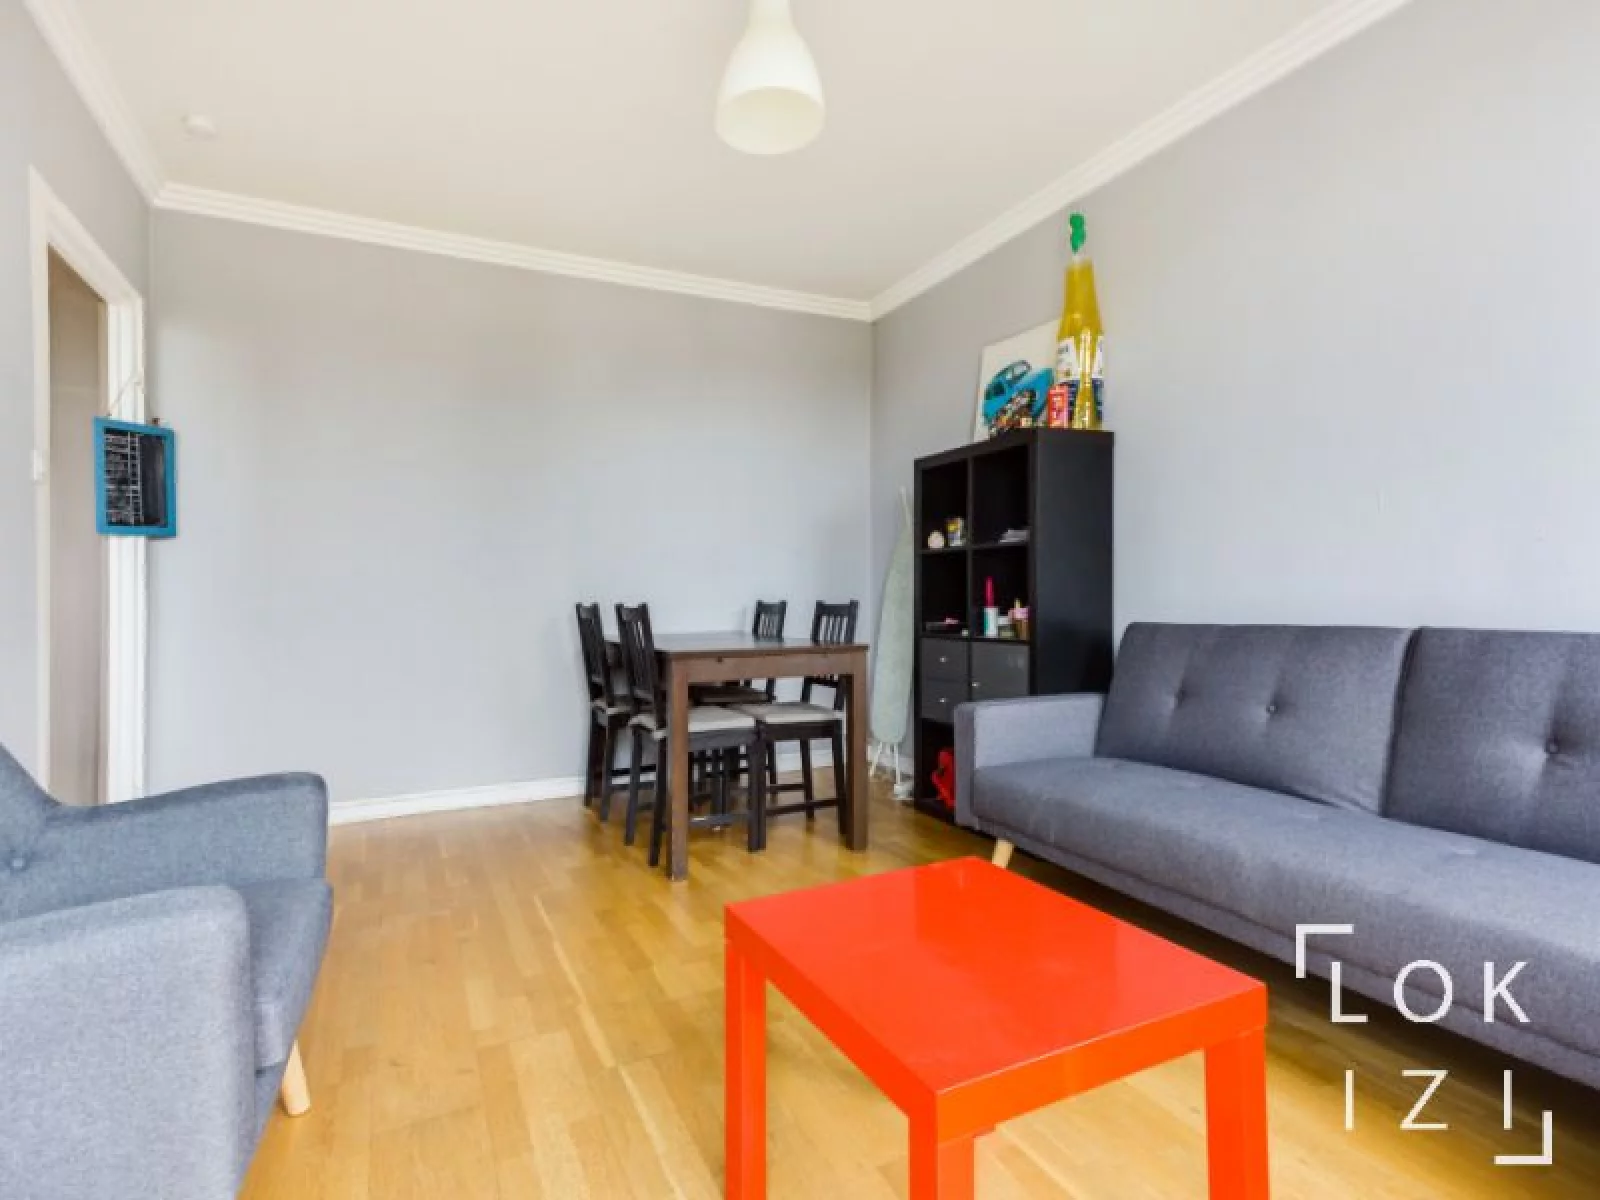 Location appartement meublé 5 pièces 82m² (Toulouse)